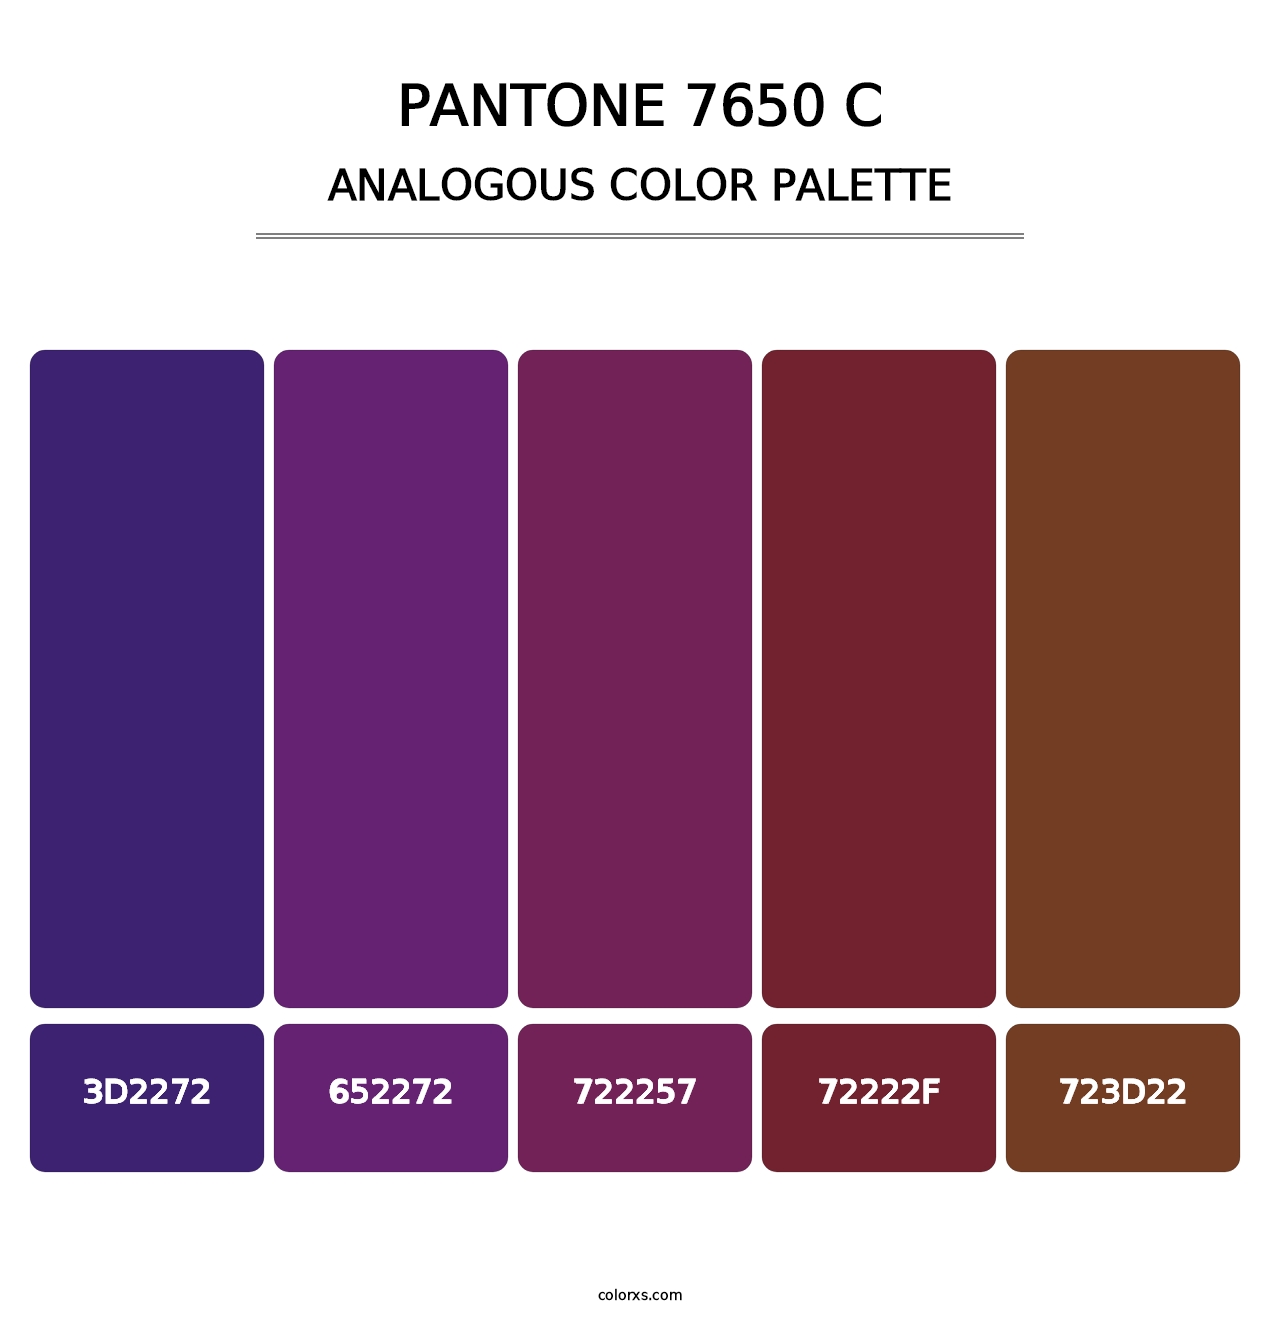 PANTONE 7650 C - Analogous Color Palette